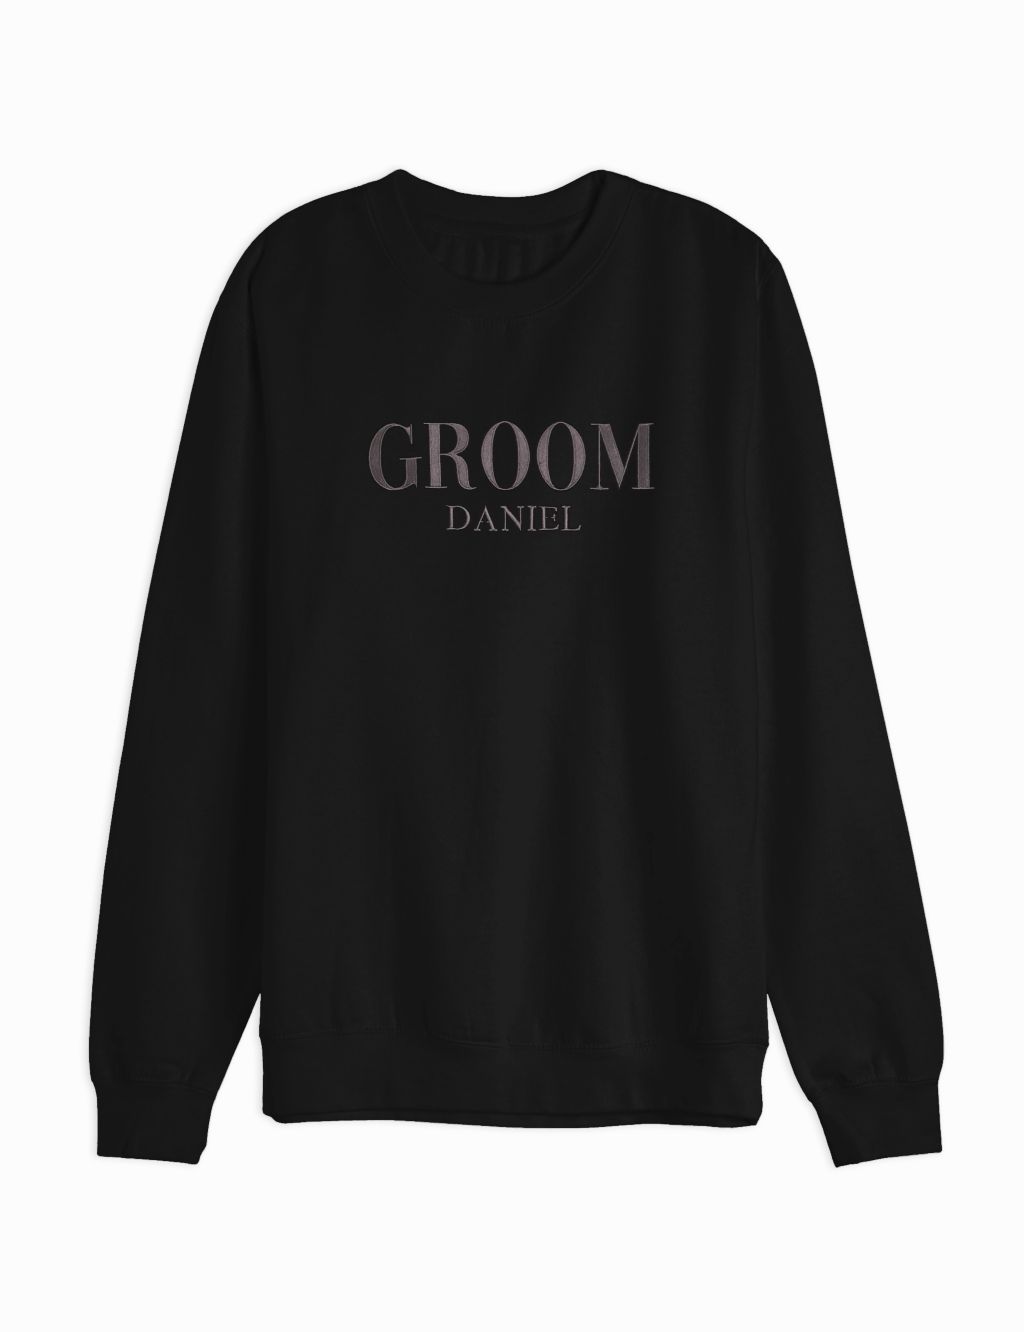 Personalised Groom Sweatshirt